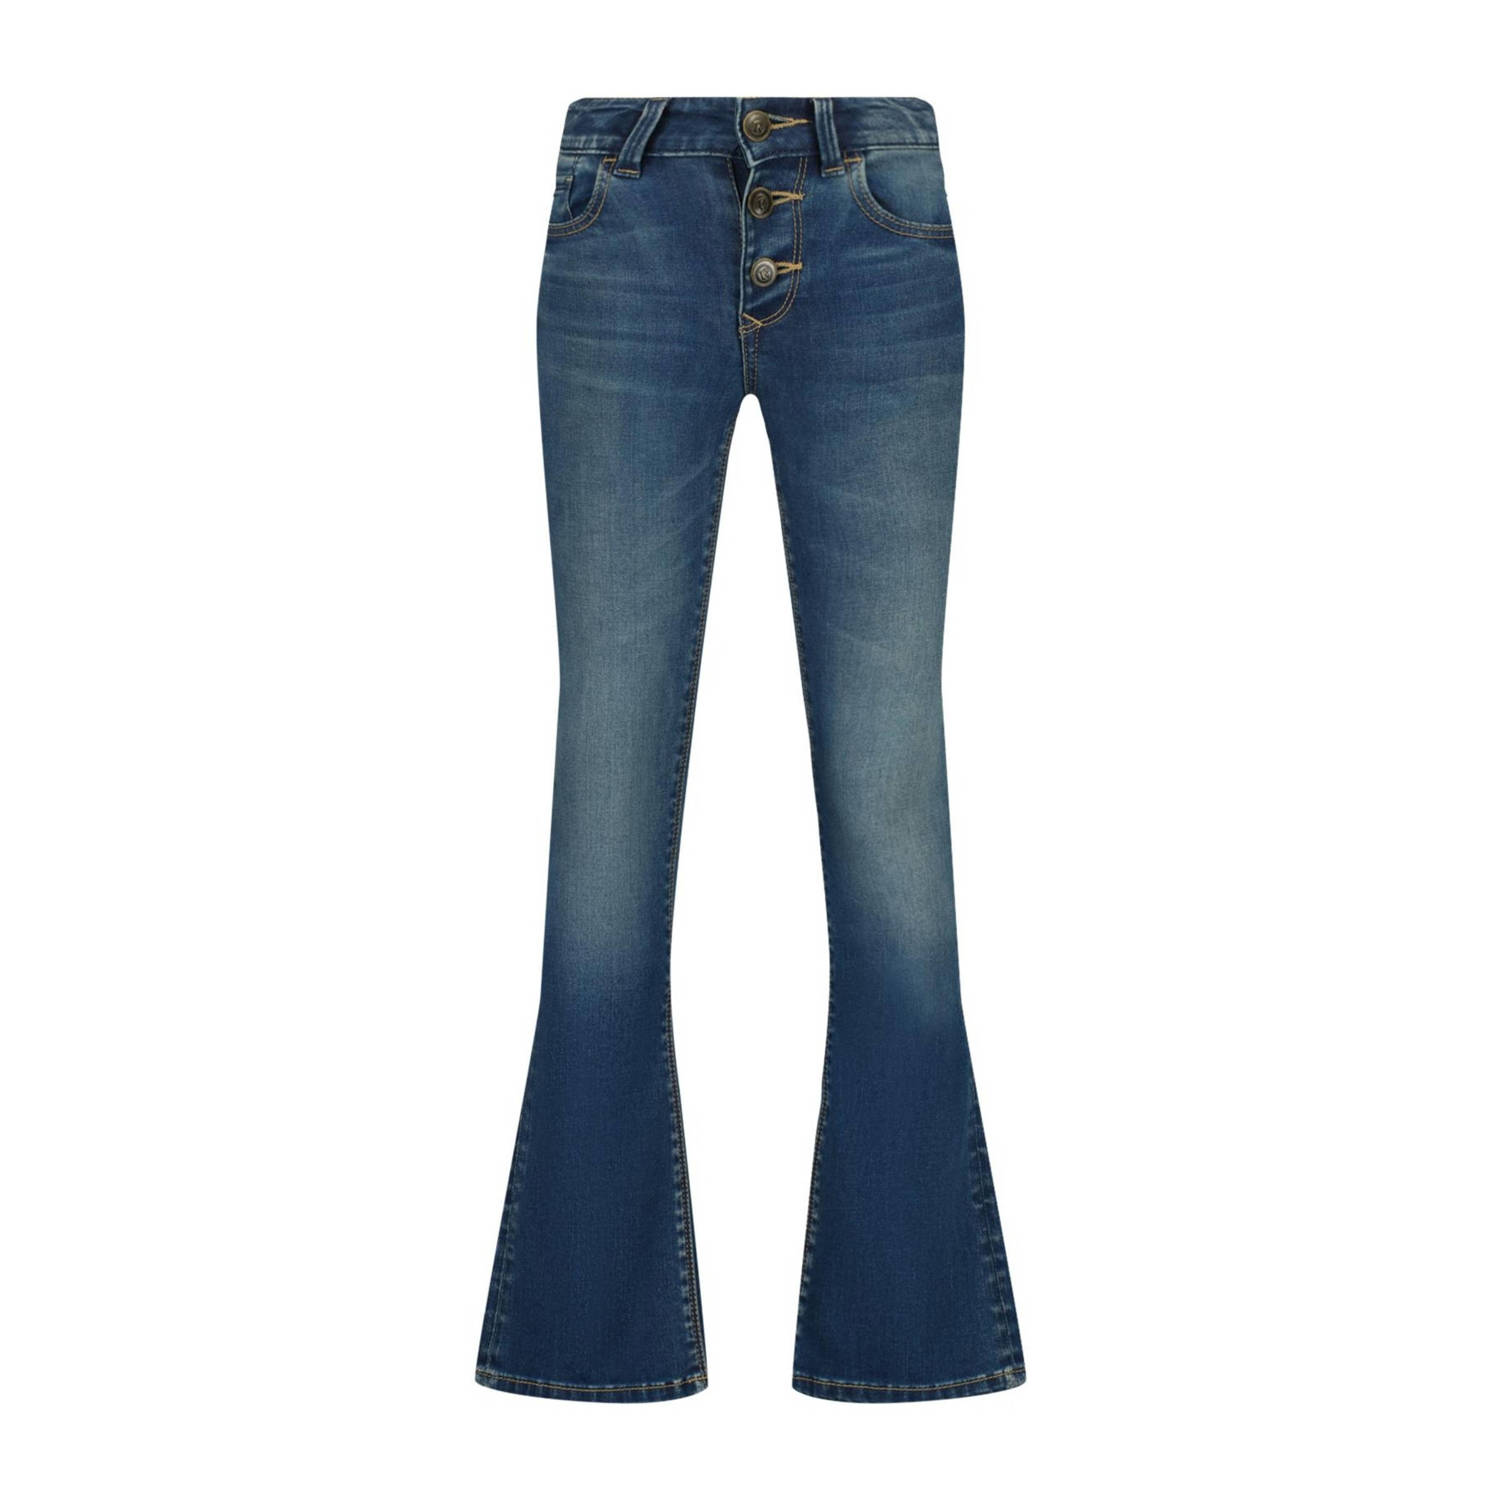 Raizzed flared jeans Melbourne dark blue stone Blauw Meisjes Stretchdenim 134